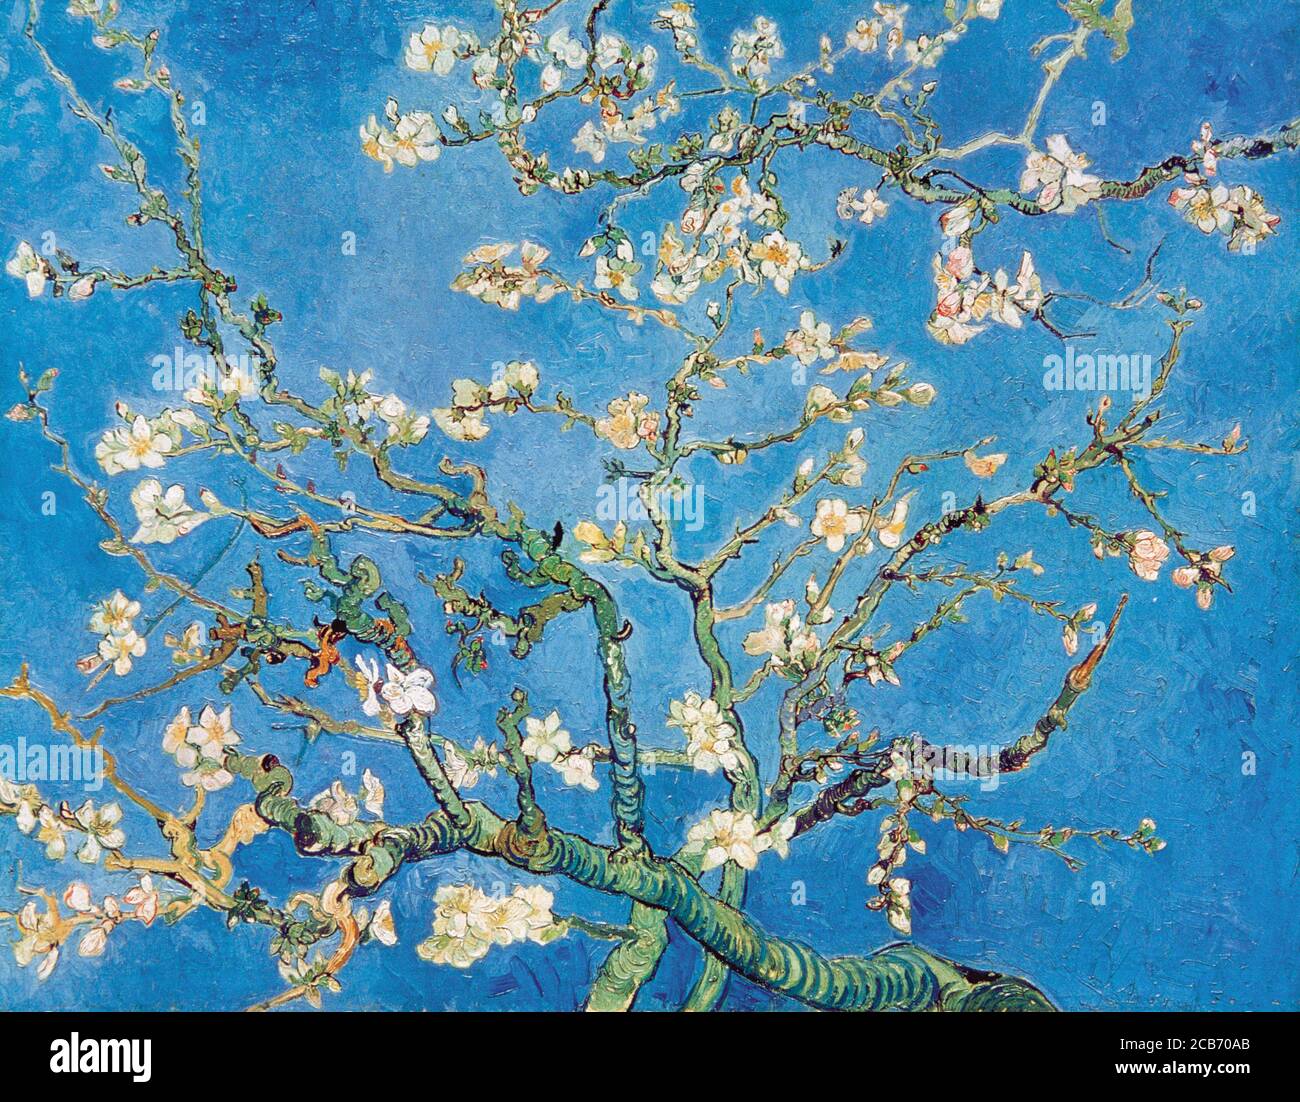 Vincent van Gogh (1853-1890). Peintre post-impressionniste néerlandais. Fleur d'amande, 1890. Huile sur toile (73,3 cm x 92,4 cm). Musée Van Gogh. Amsterdam, pays-Bas. Banque D'Images